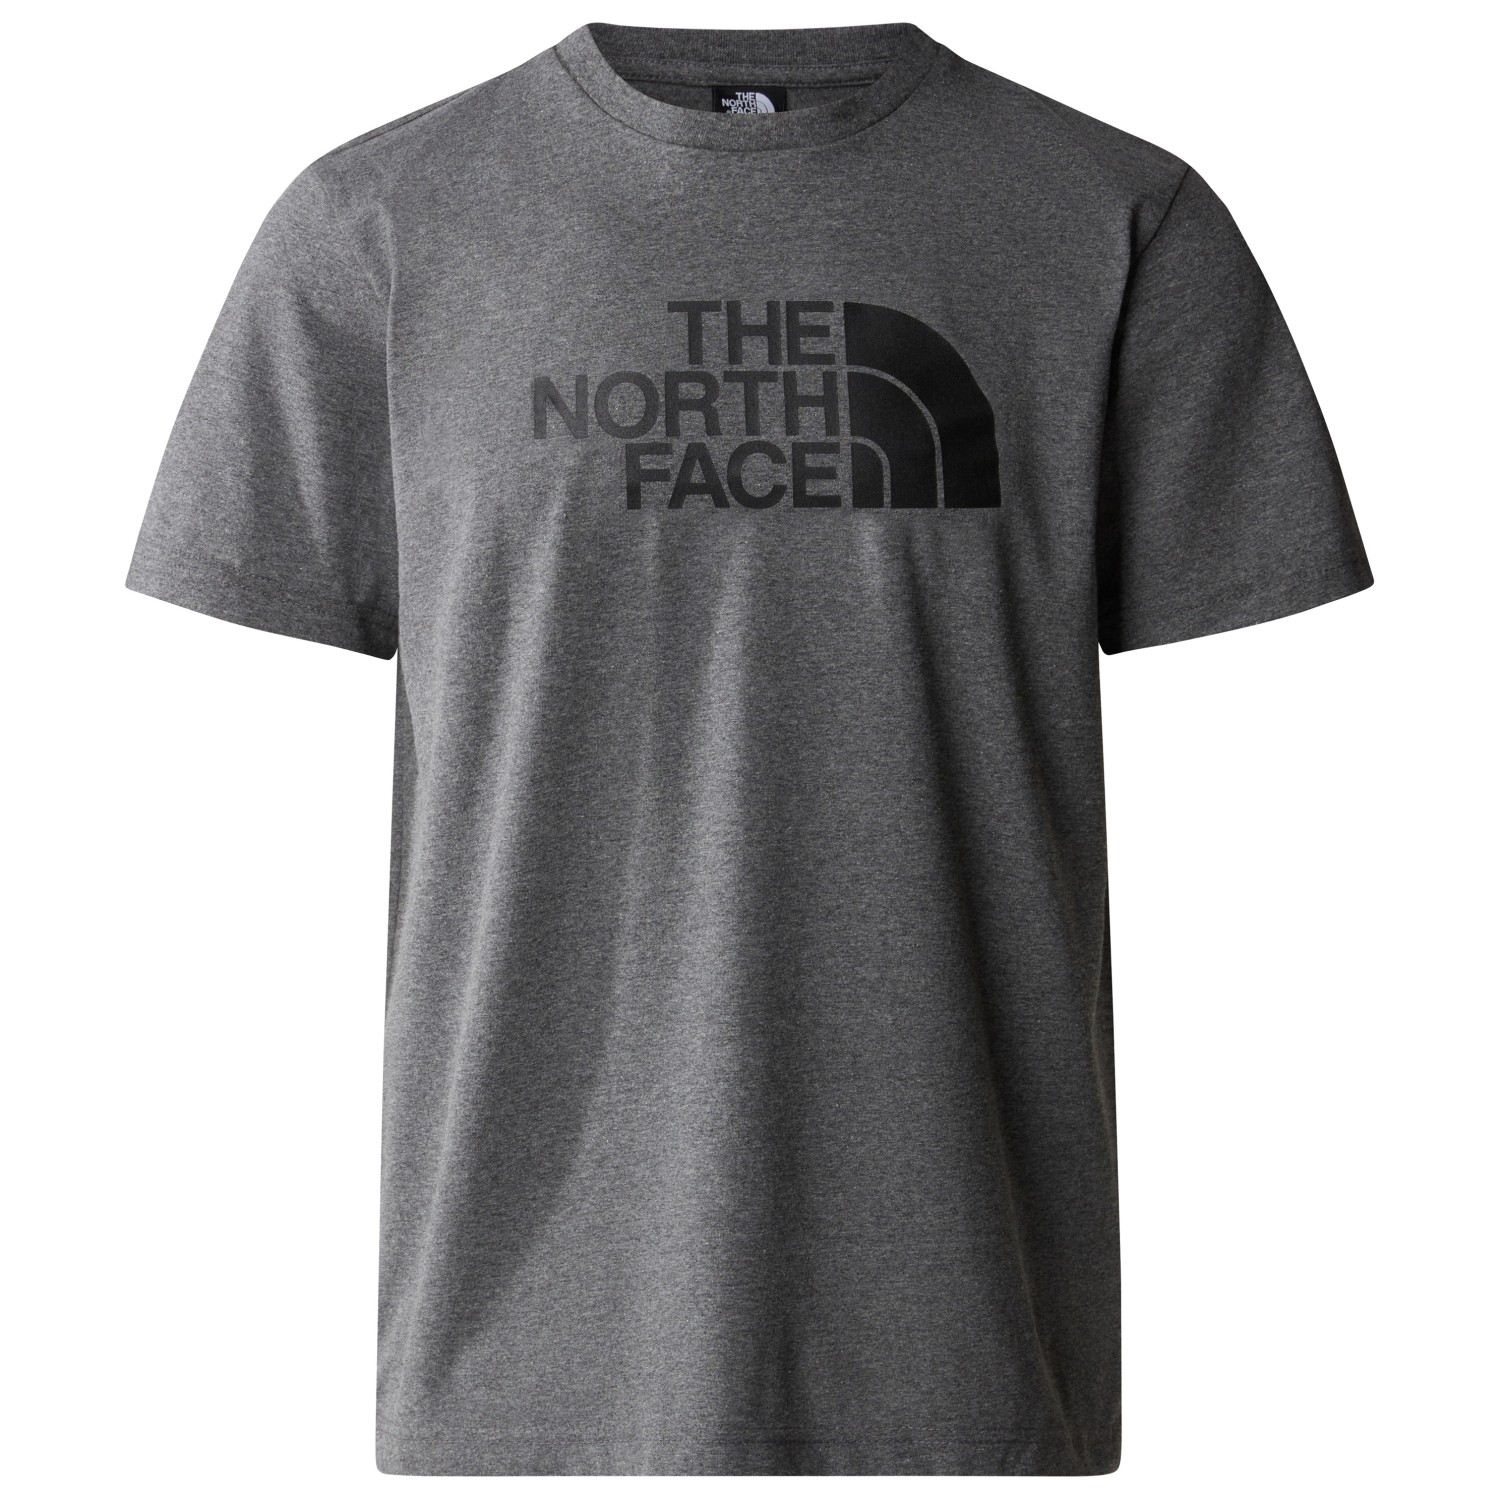 футболка the north face s s mountain line tee цвет tnf black Футболка The North Face S/S Easy Tee, цвет TNF Medium Grey Heather